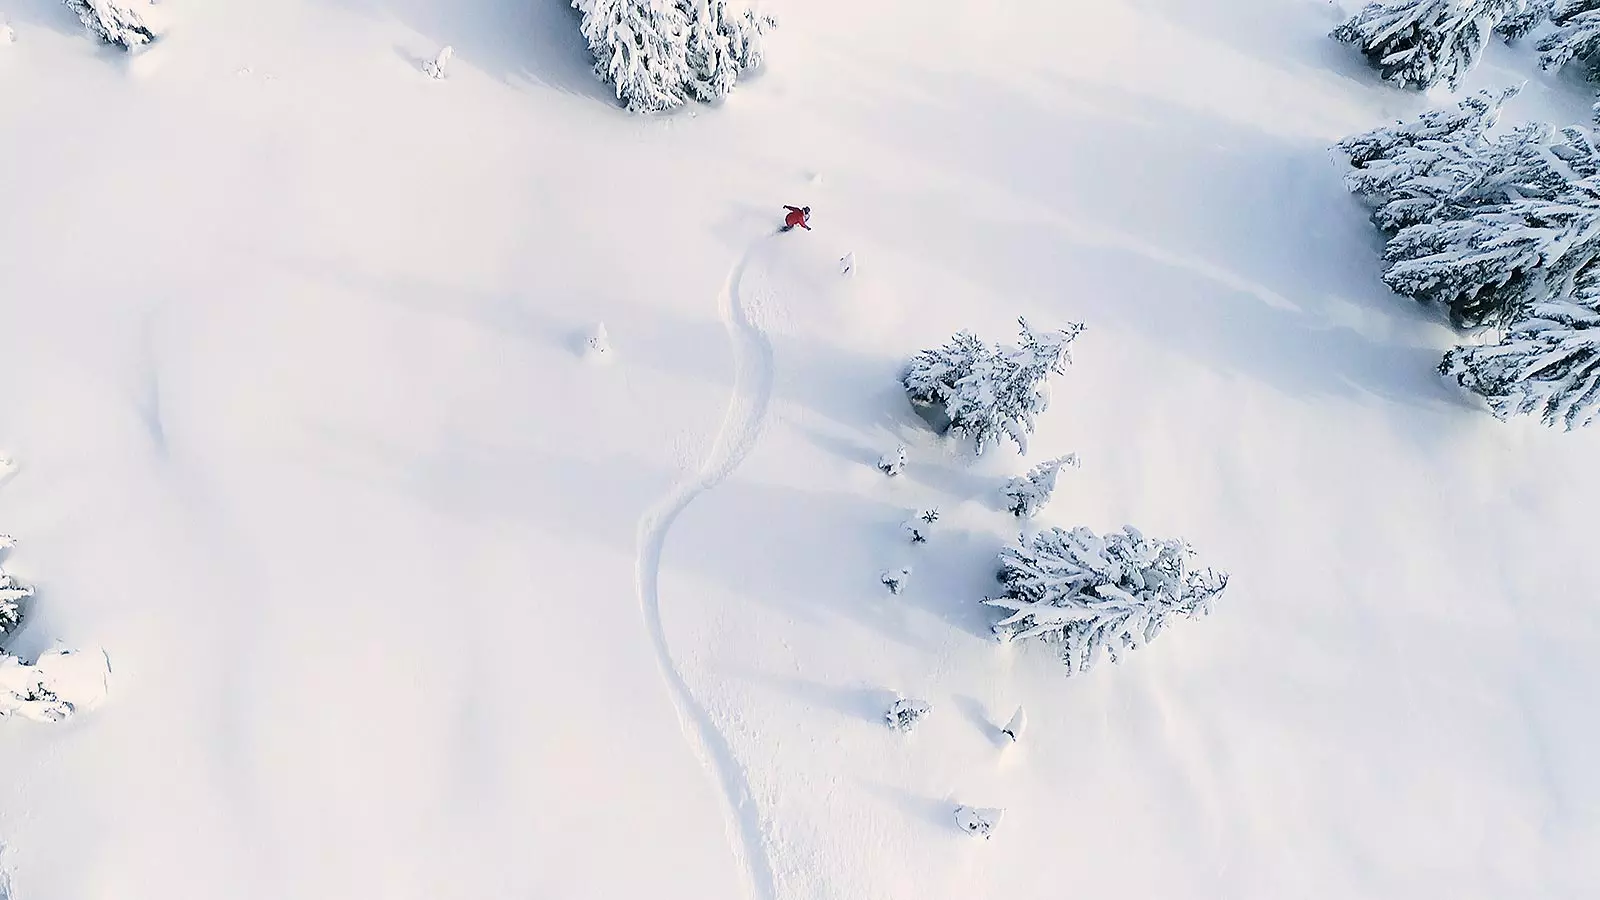 Foto aerea di una sciatrice fuori pista in neve fresca